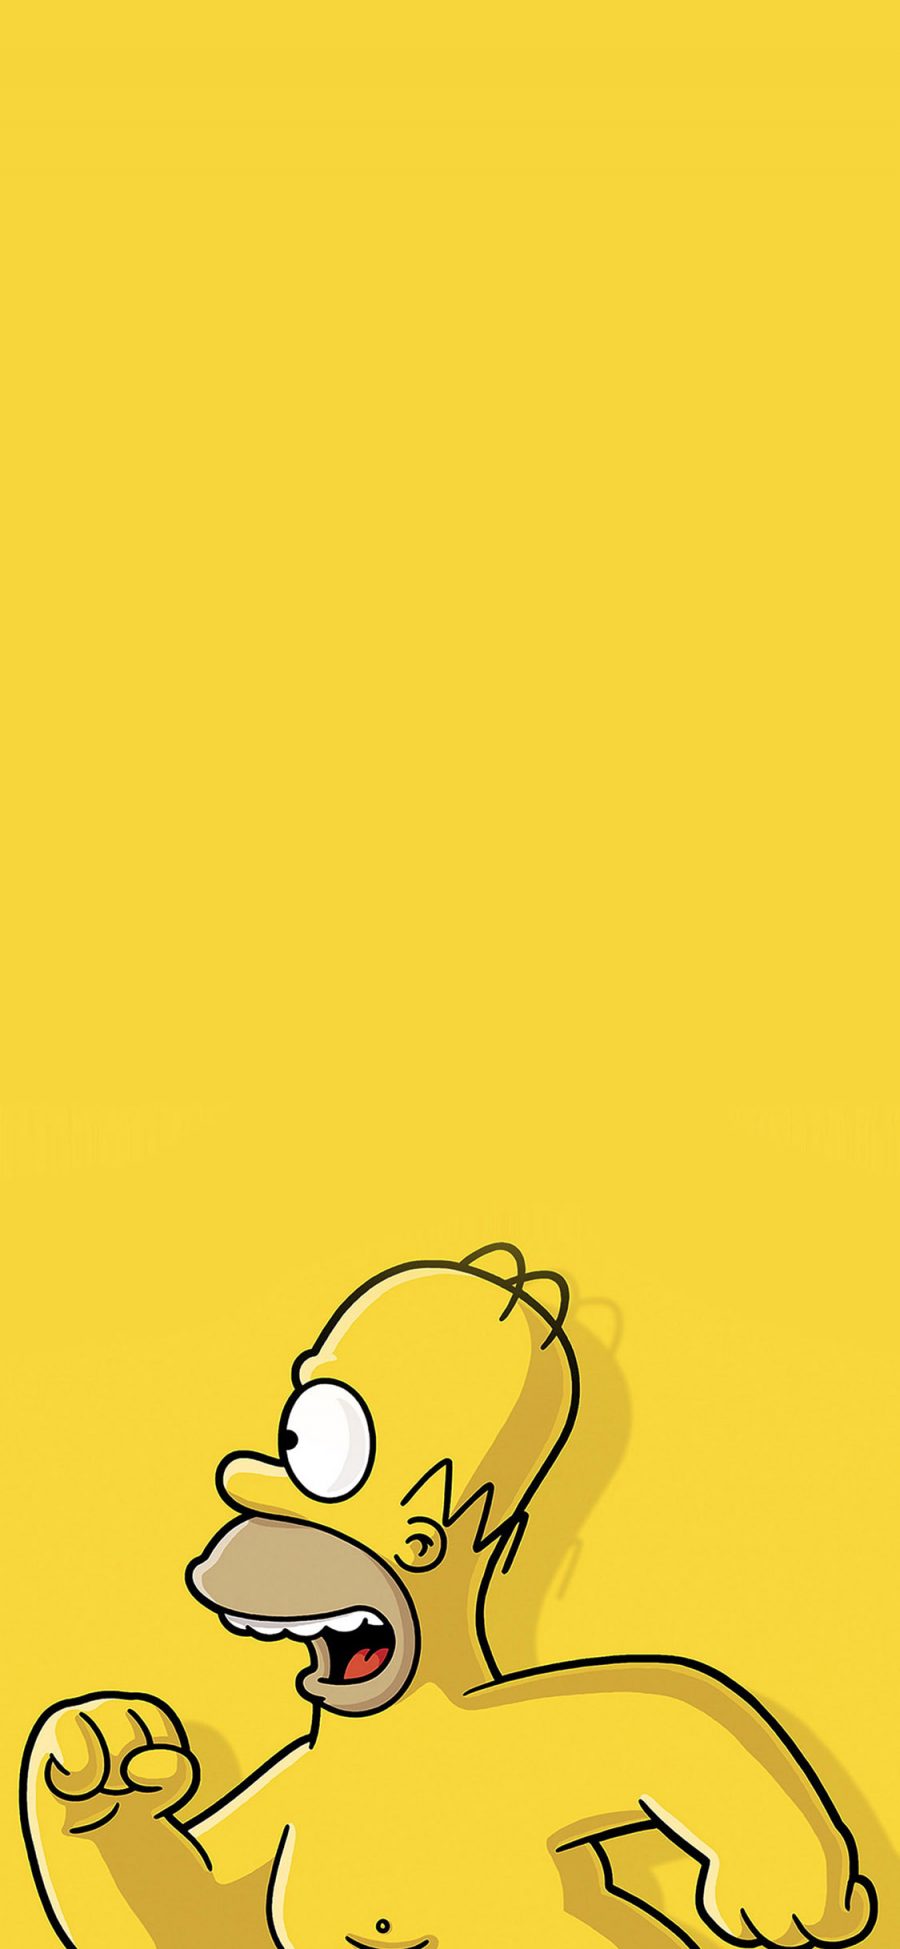 [2436×1125]辛普森 动画 卡通 黄色 跑步 裸体 苹果手机动漫壁纸图片